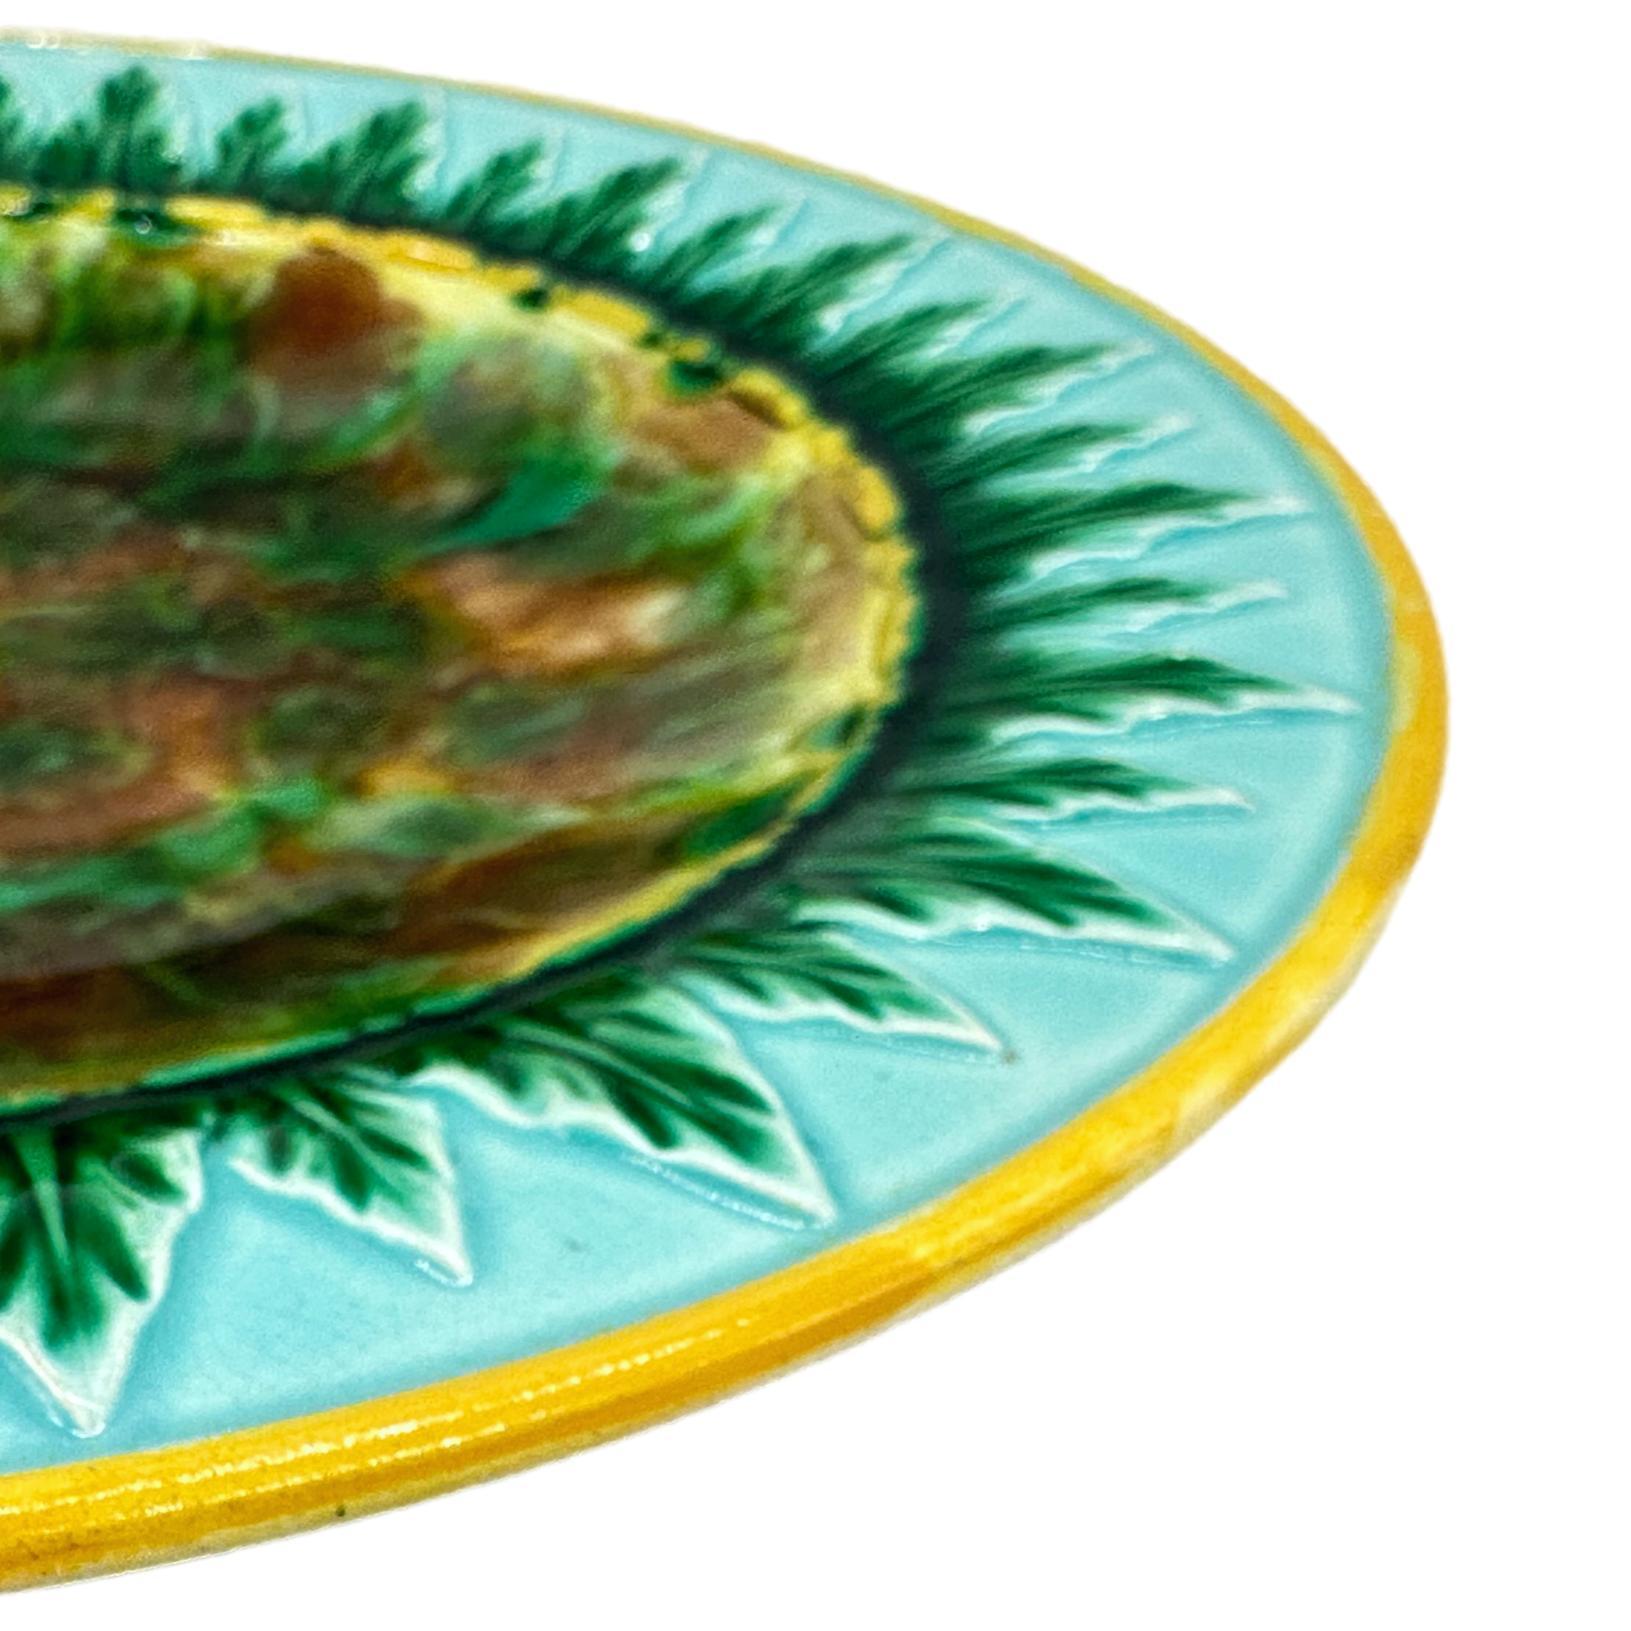 Victorian George Jones Majolica Plate, Tortoiseshell Mottling, Green Leaves on Turquoise For Sale